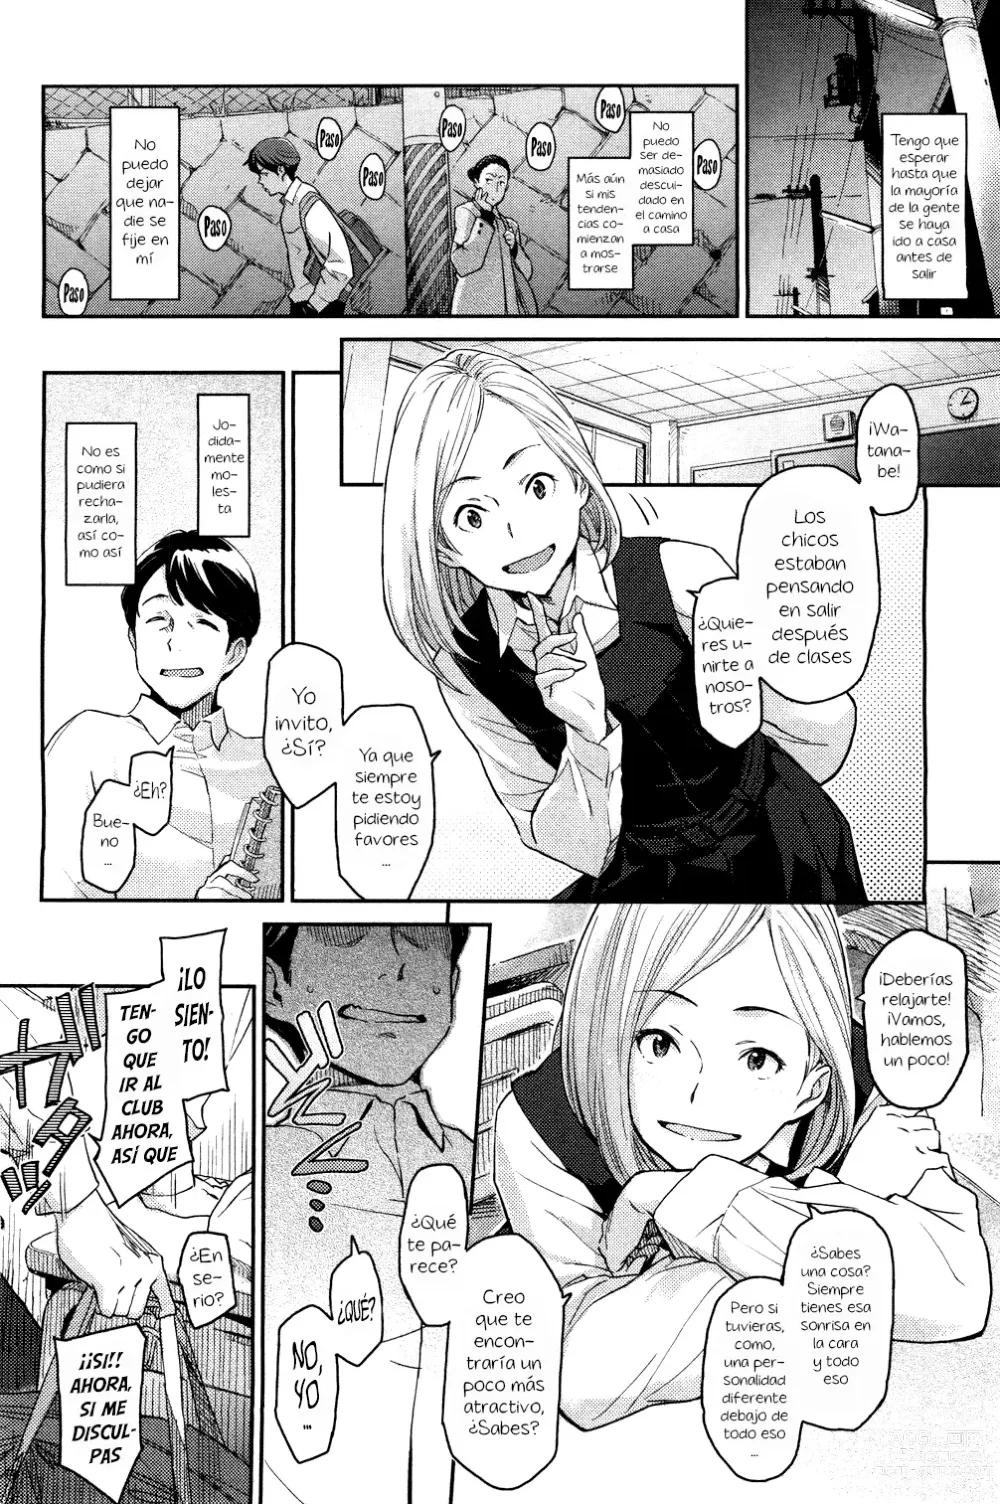 Page 6 of manga Spare Key